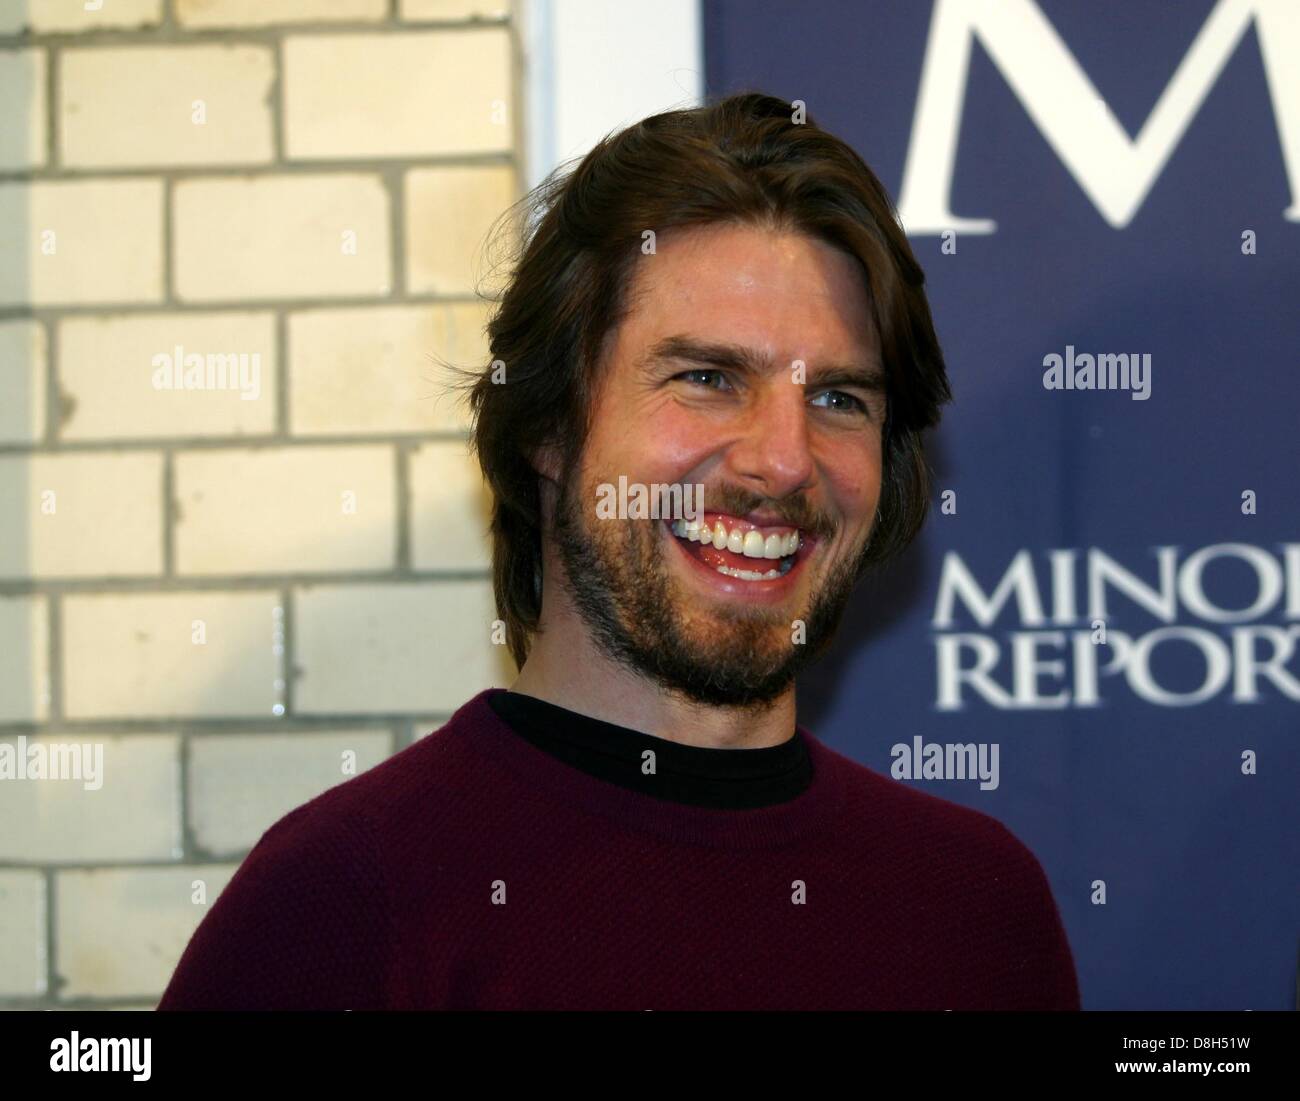 Tom Cruise bei der Präsentation seines neuen Films "Minority Report" in Berlin. Stockfoto